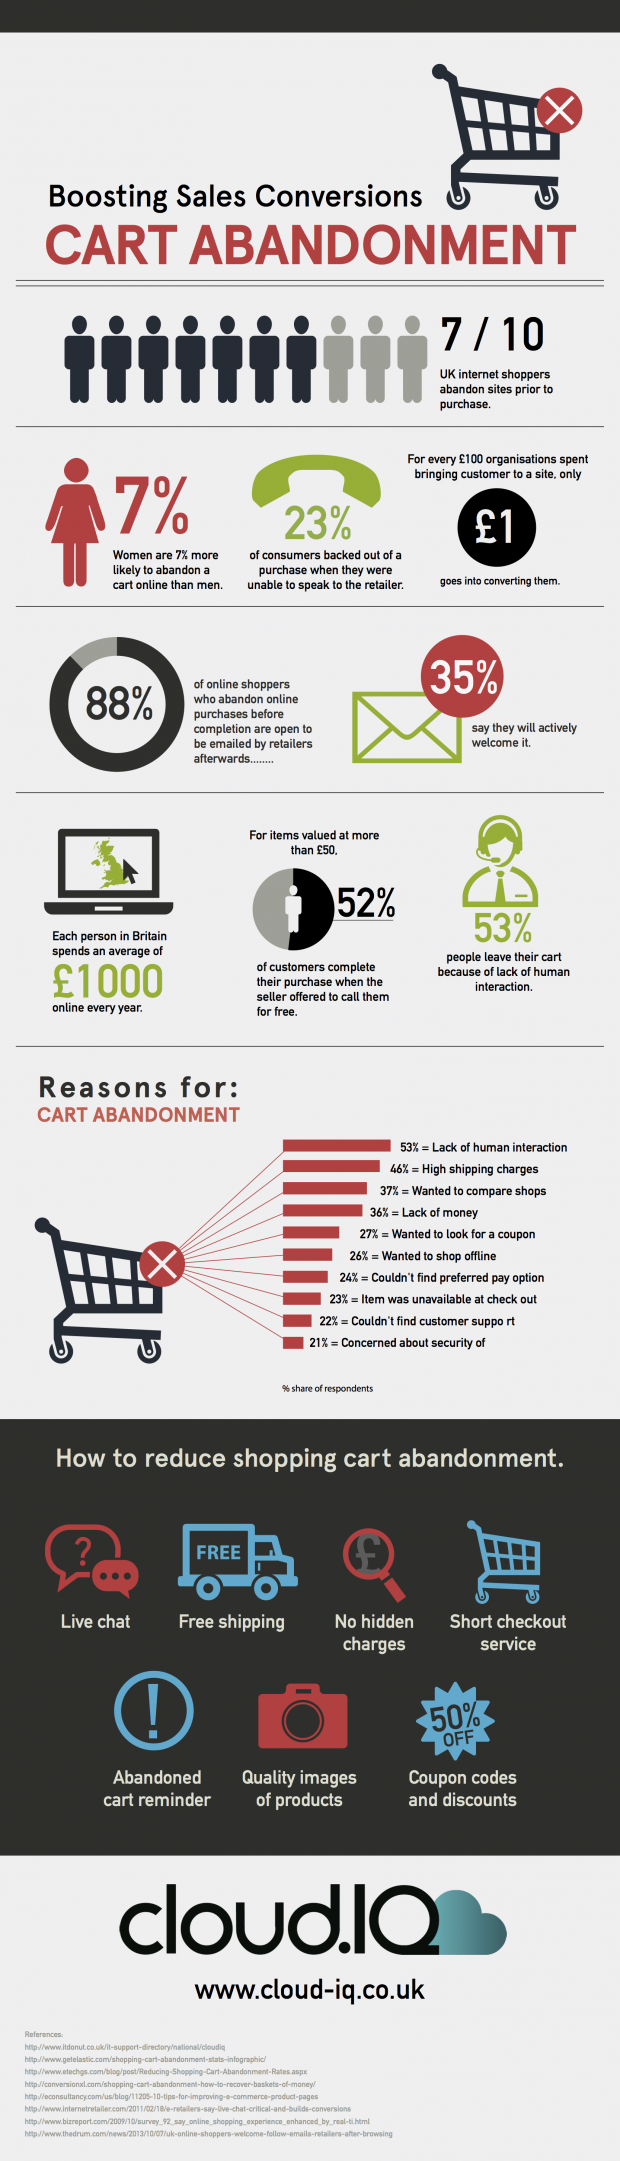 Cart-abandon-infographic-email-marketing